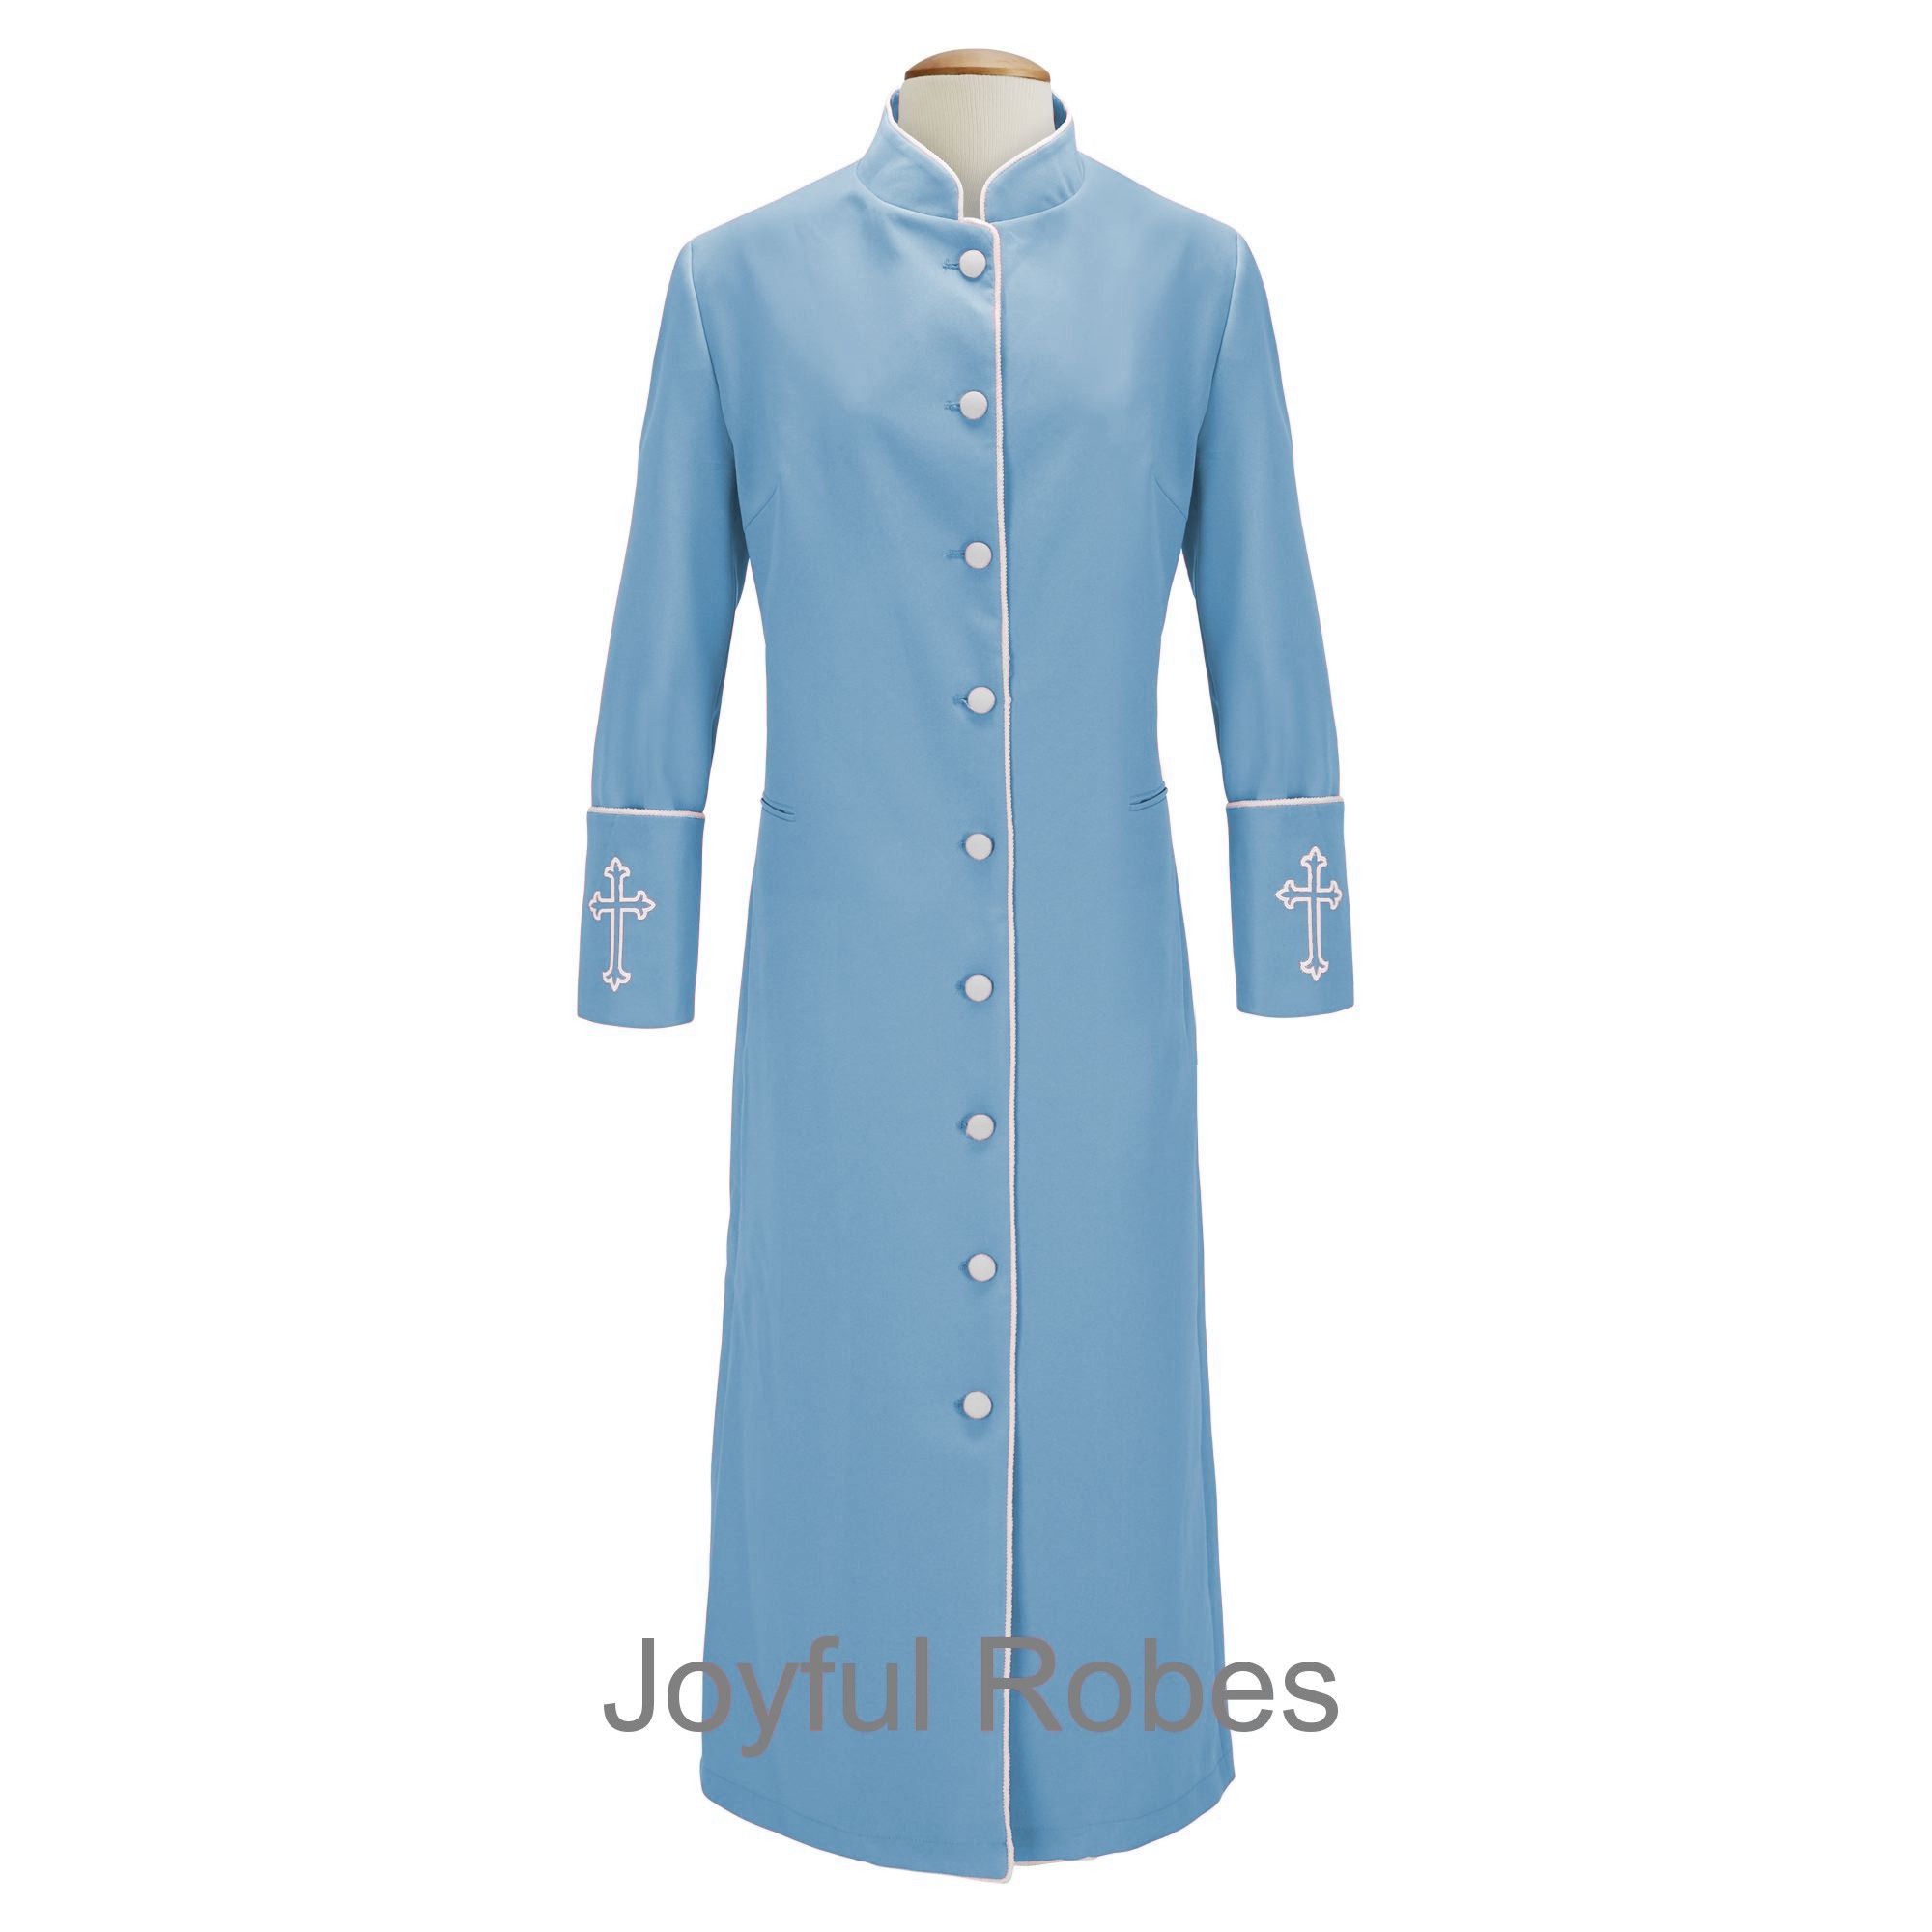 211 W. Women's Clergy/Pastor Robe - Light Blue/White Design